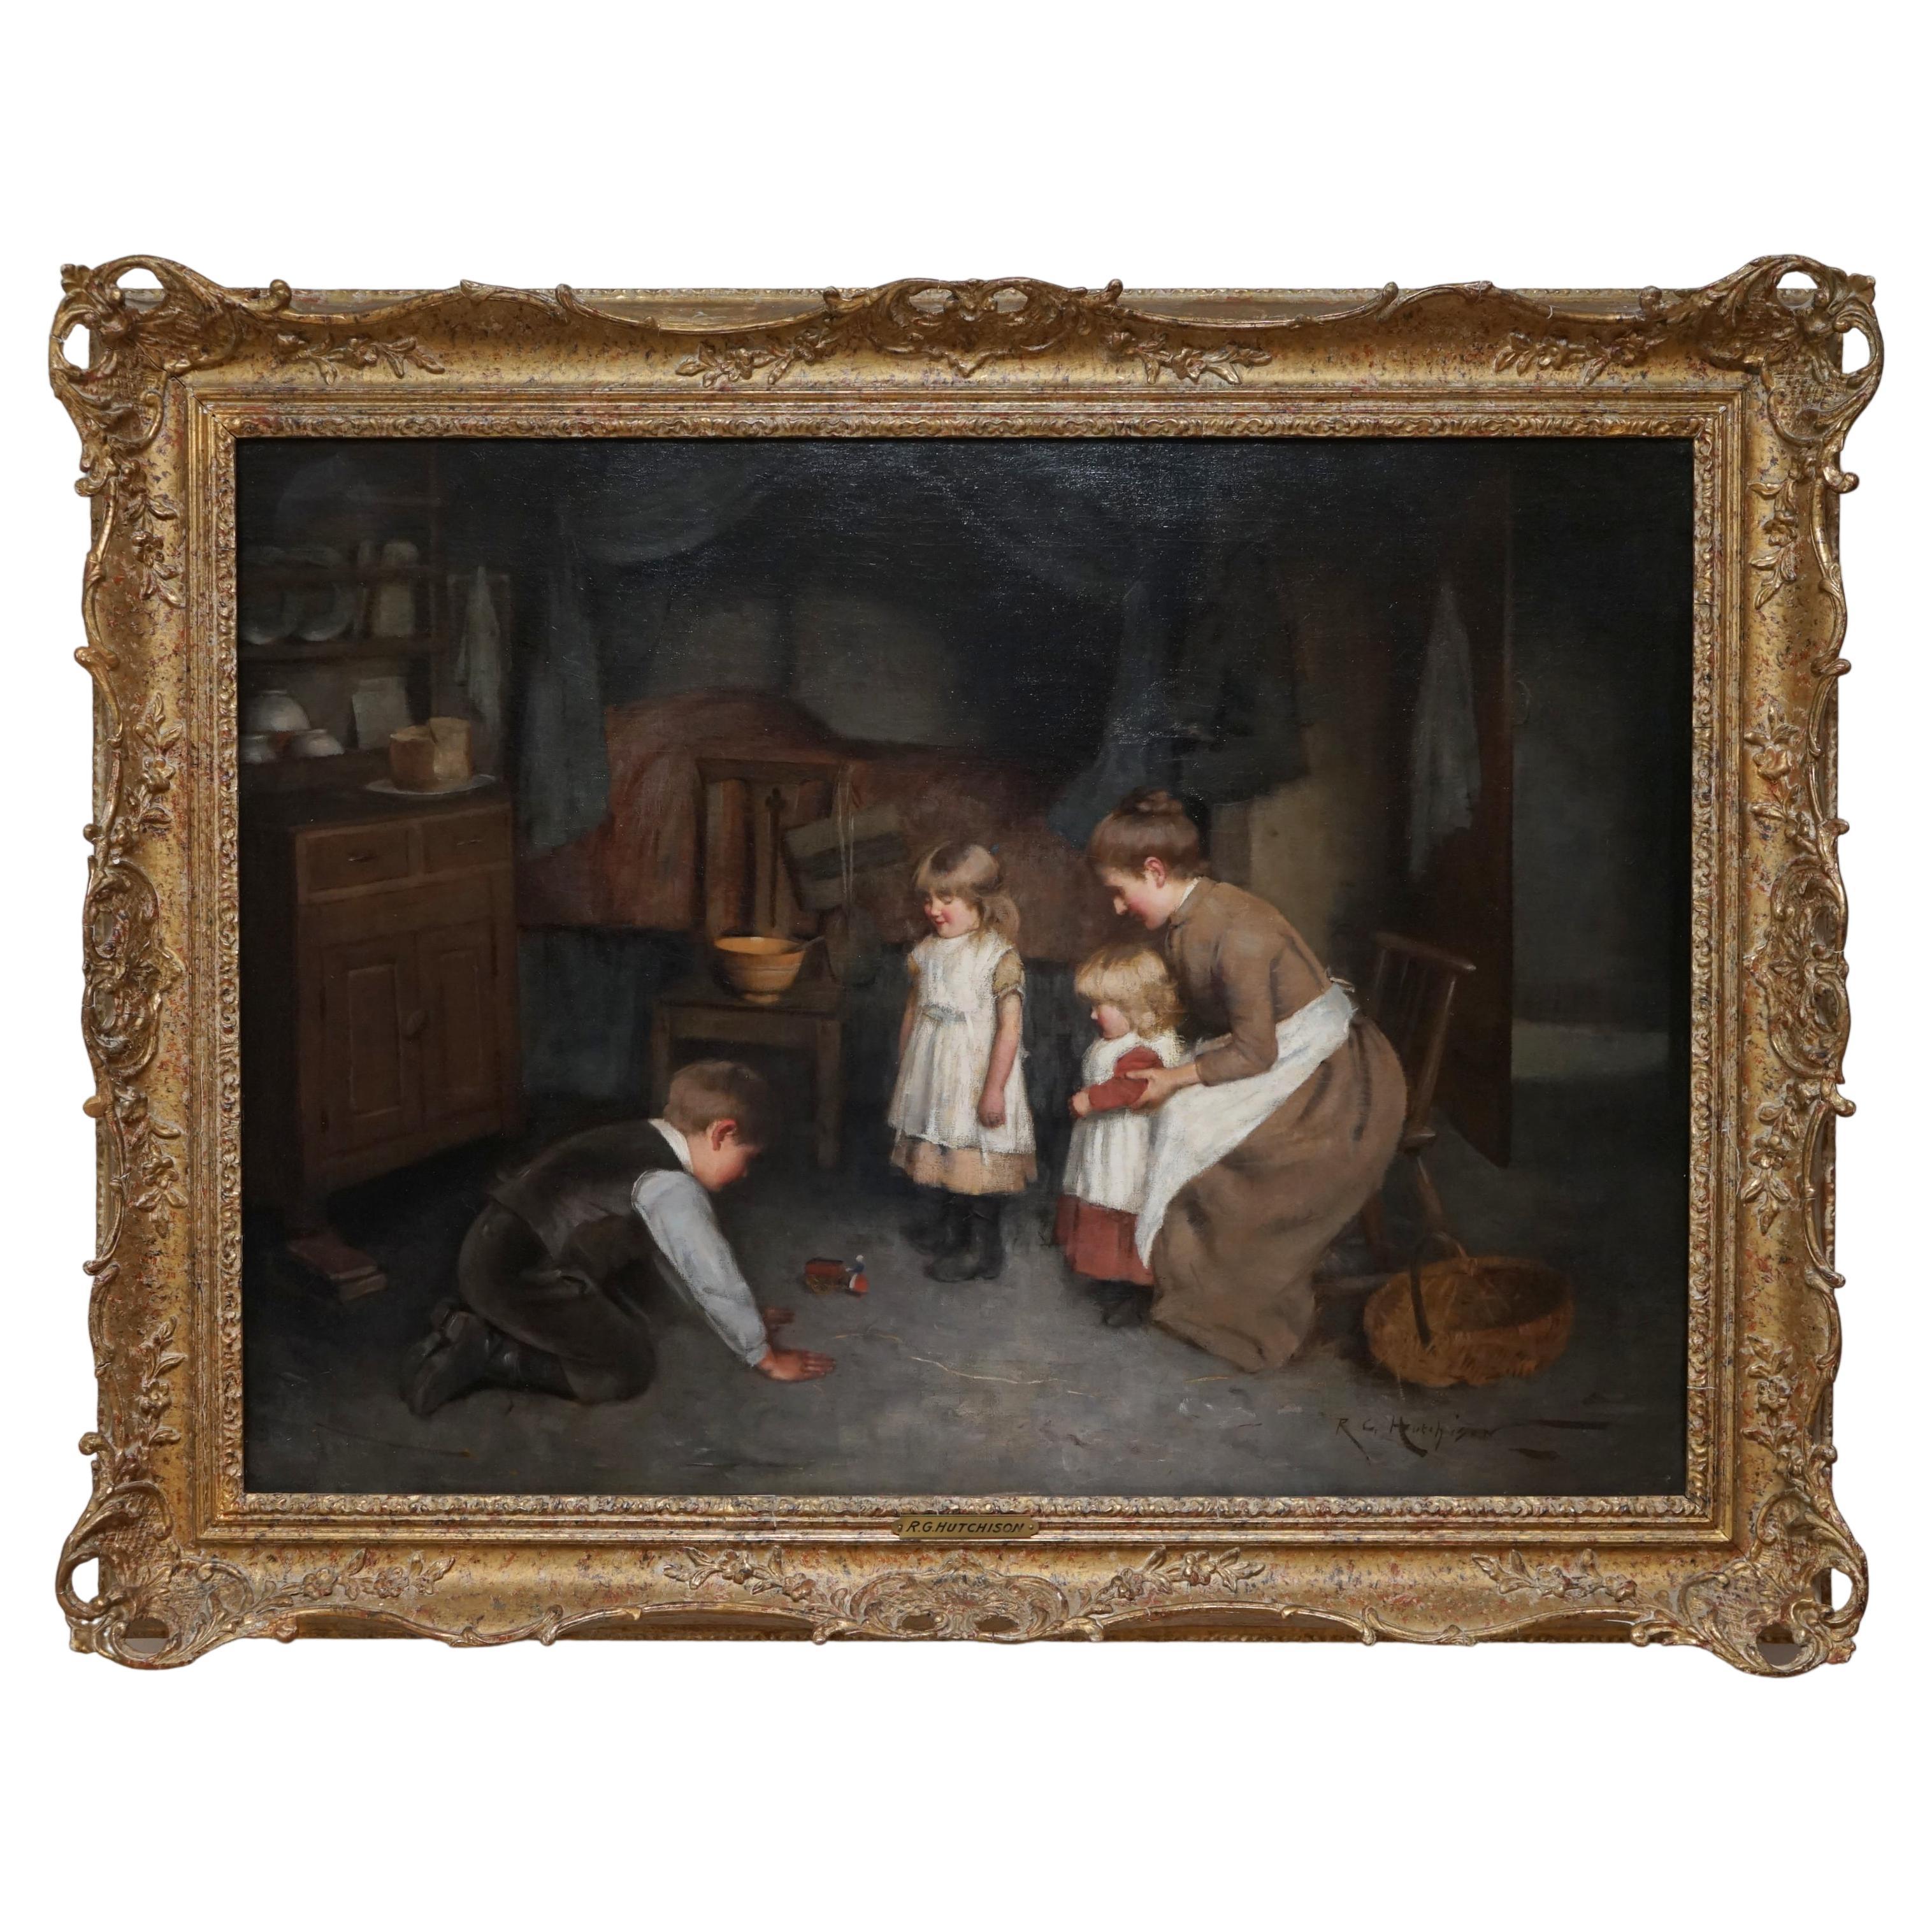 Huile sur toile originale de Robert Gemmell Hutchison représentant un nouveau jouet, datant d'environ 1880-90